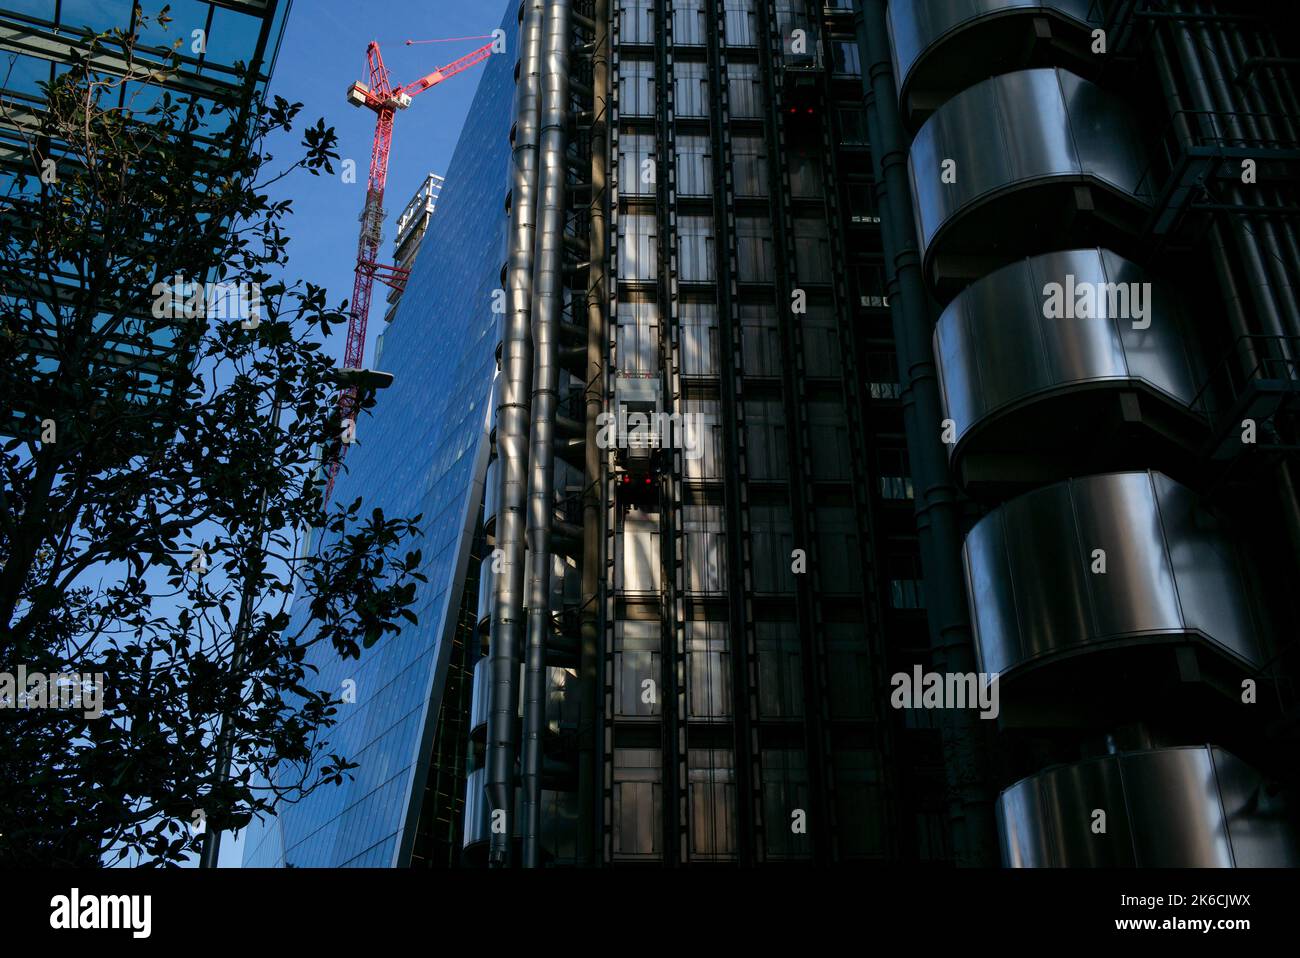 Imagen en ángulo bajo de los rascacielos en el distrito financiero de Londres, Reino Unido. edificio lloyds, el Scalpel la milla cuadrada. Foto de stock